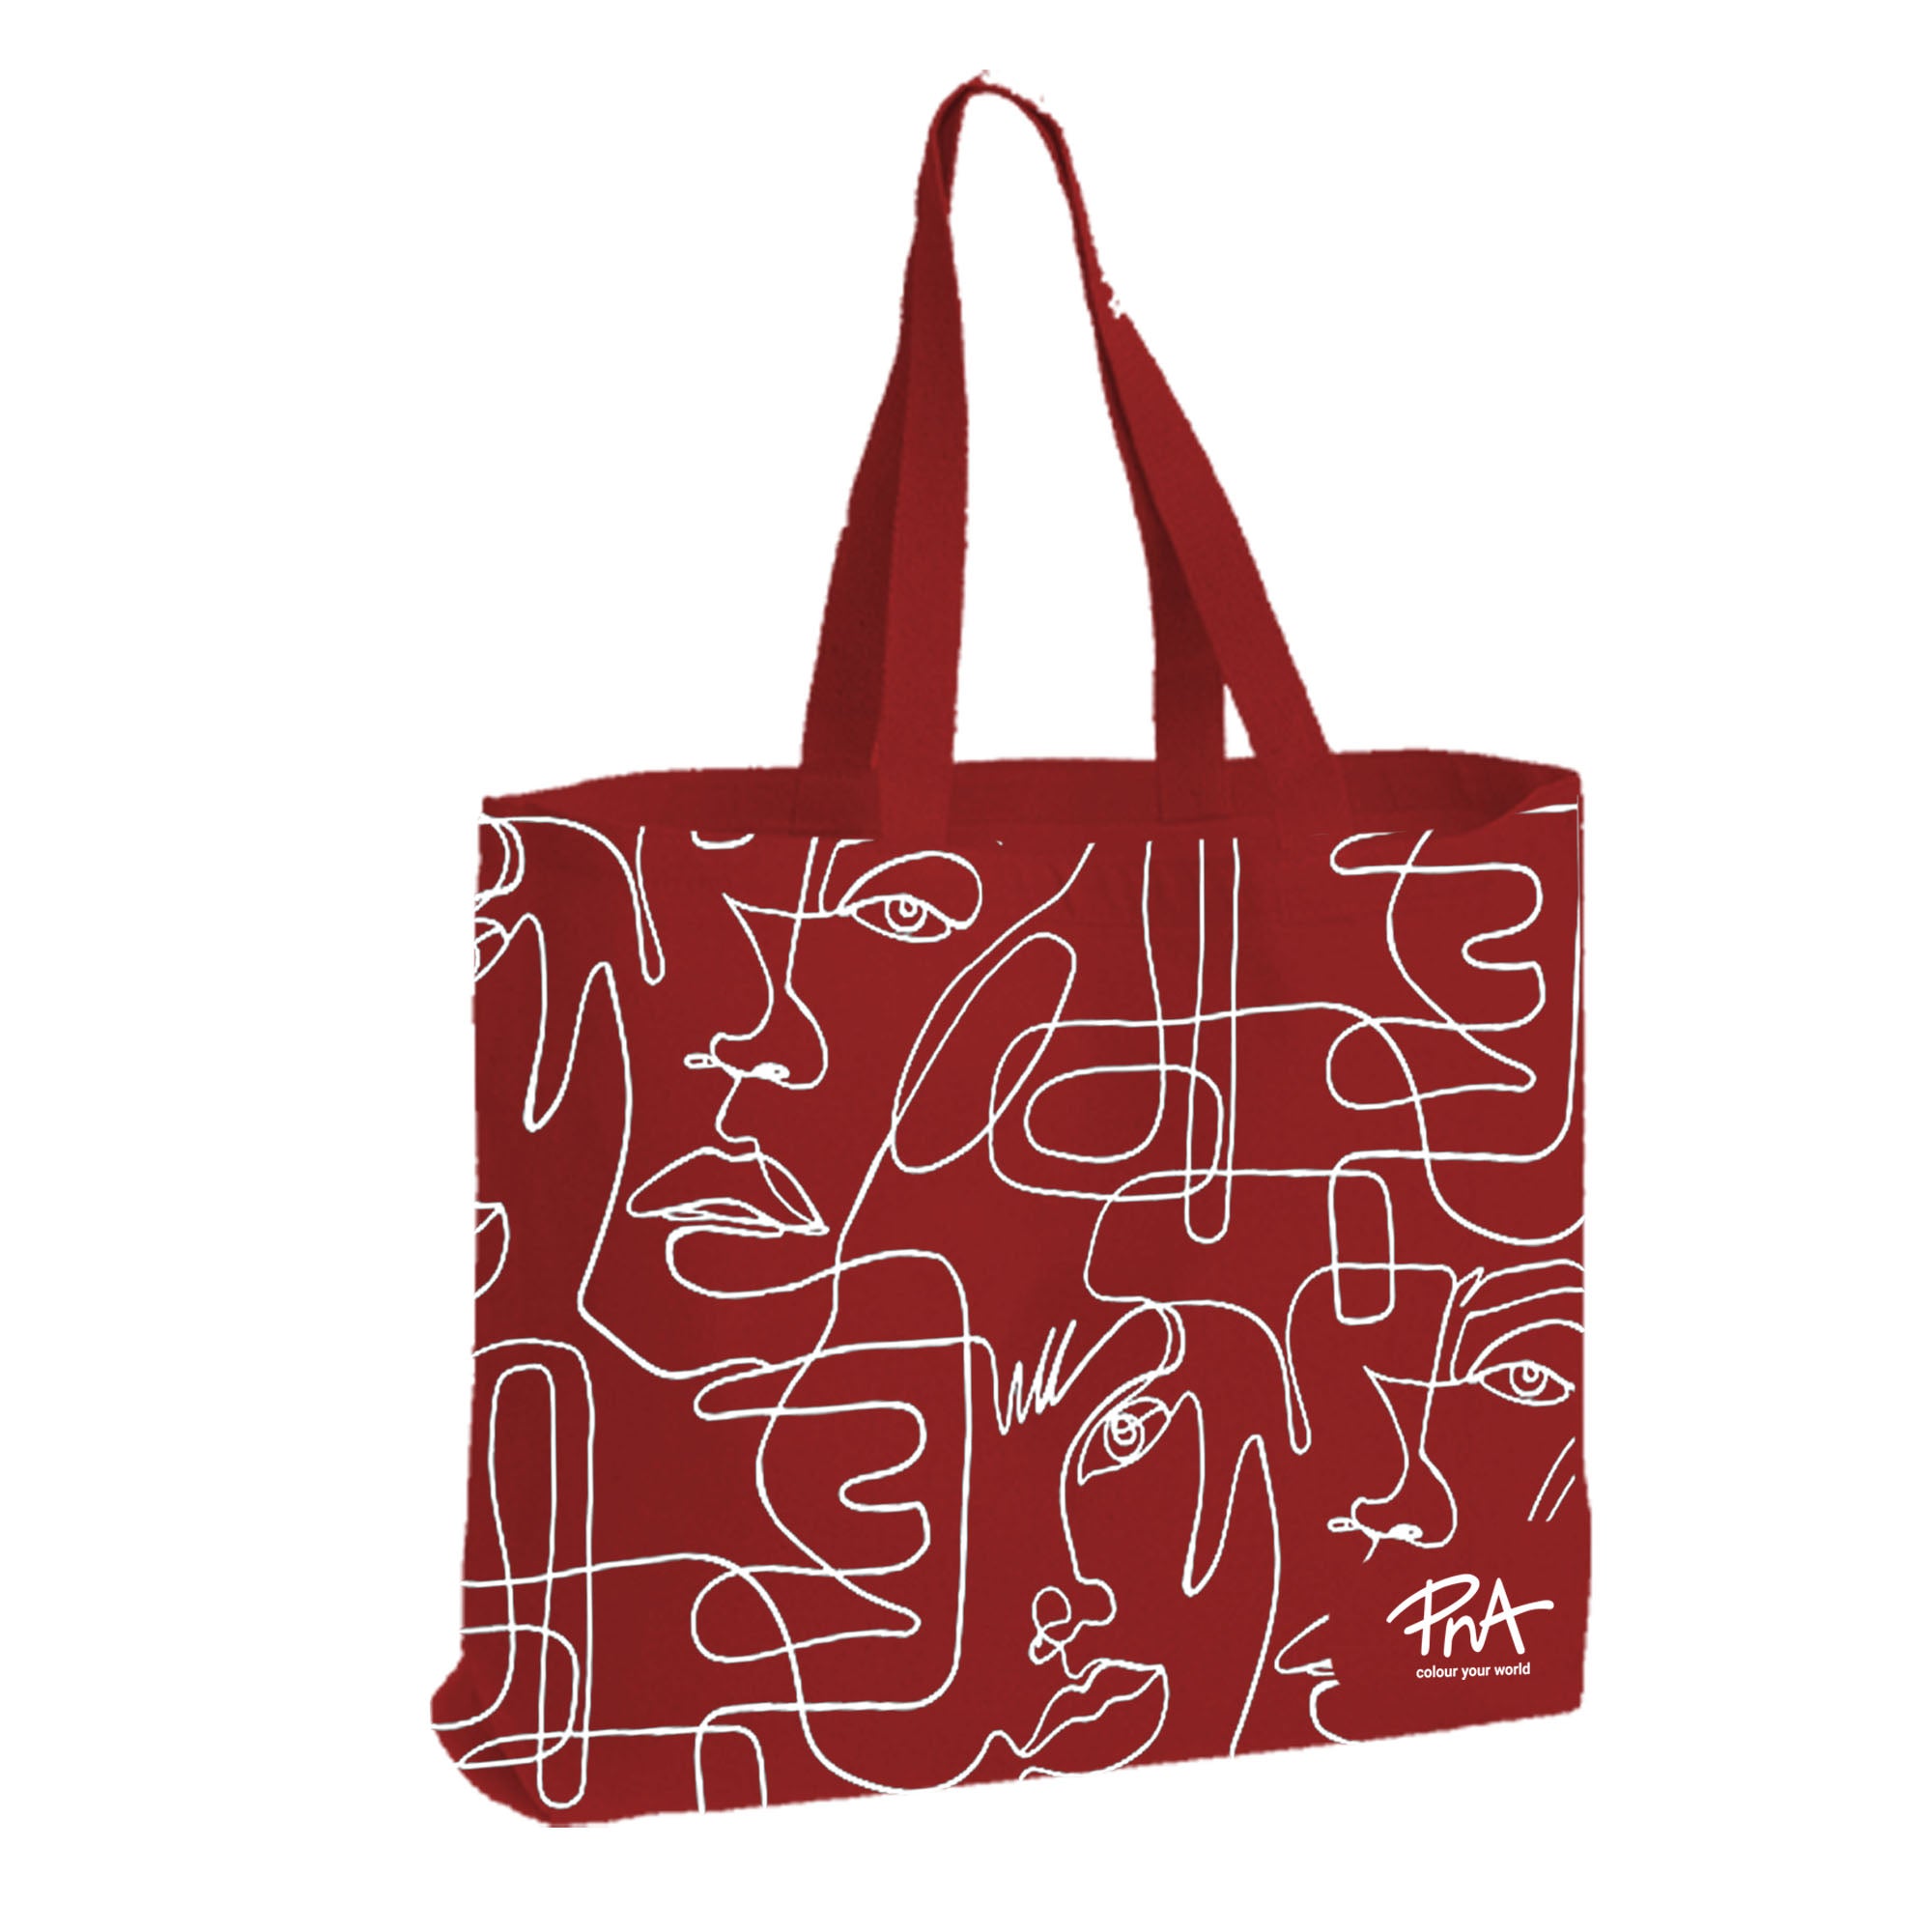 Umweltfreundliche wiederverwendbare Einkaufstasche aus Segeltuch – rotes Design